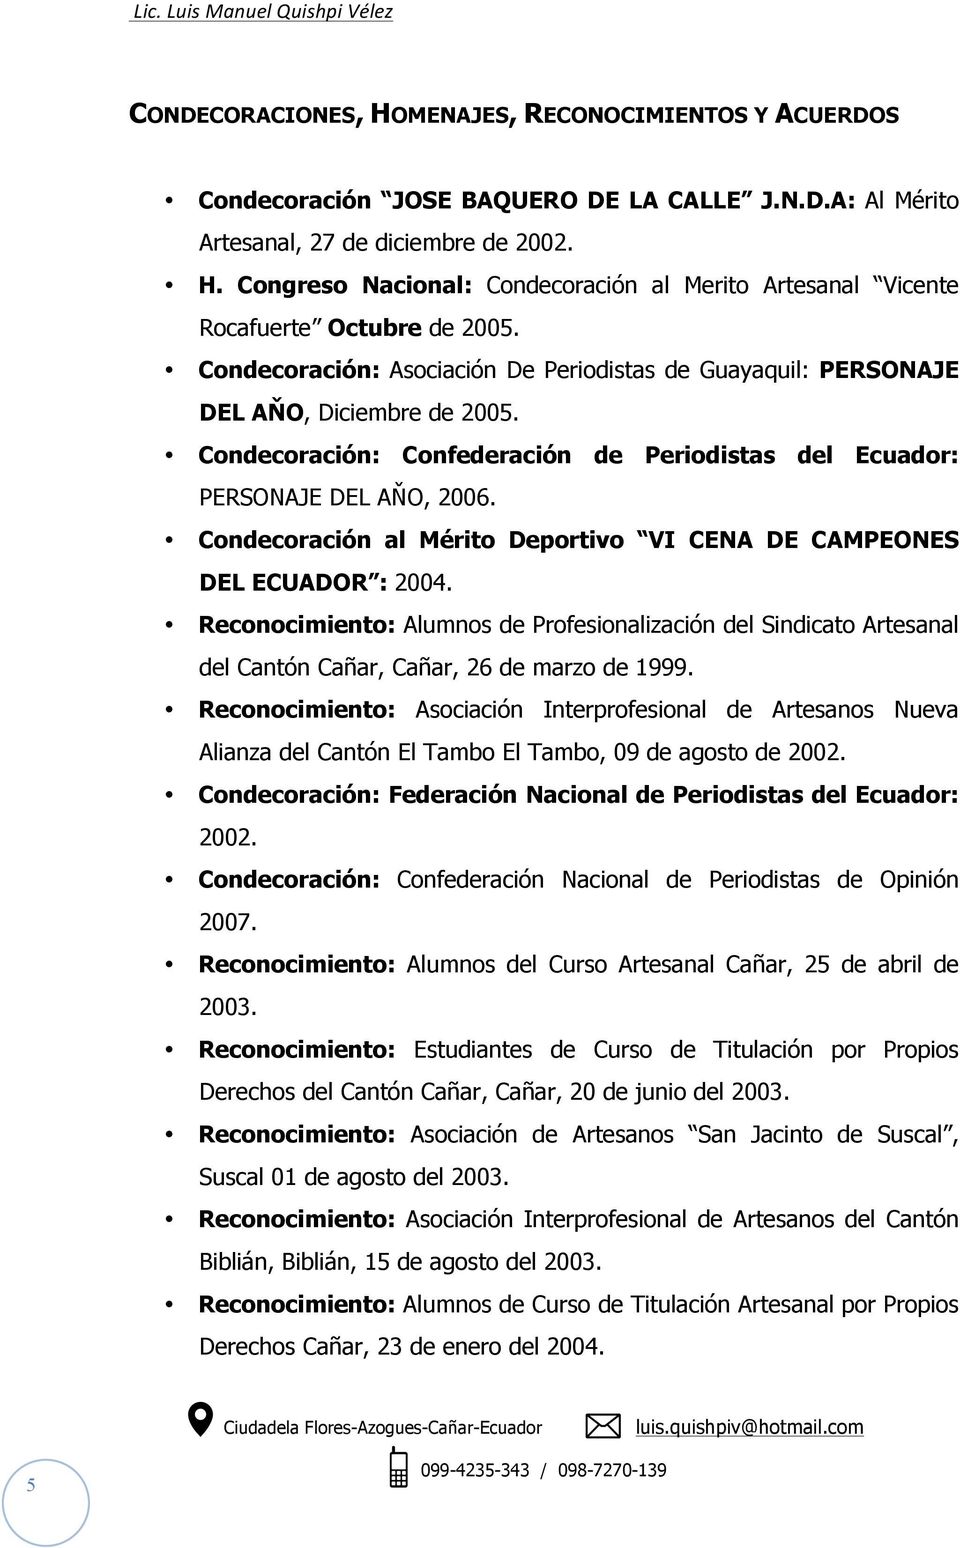 Condecoración al Mérito Deportivo VI CENA DE CAMPEONES DEL ECUADOR 2004. Reconocimiento Alumnos de Profesionalización del Sindicato Artesanal del Cantón Cañar, Cañar, 26 de marzo de 1999.